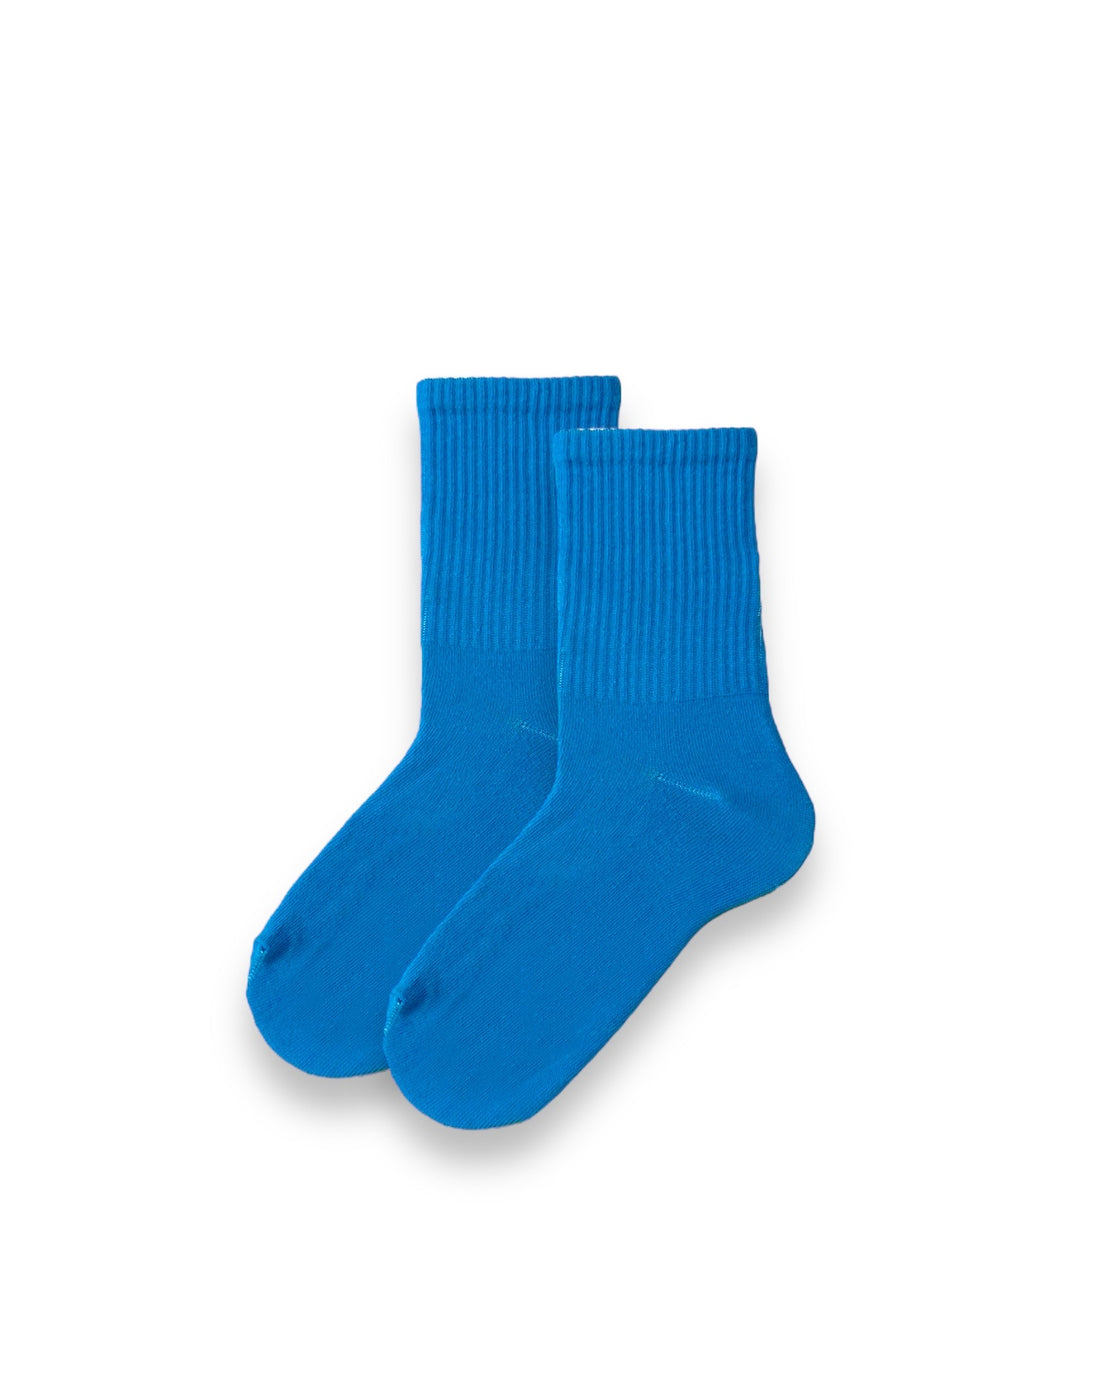 Düz Mavi Unisex Çorap